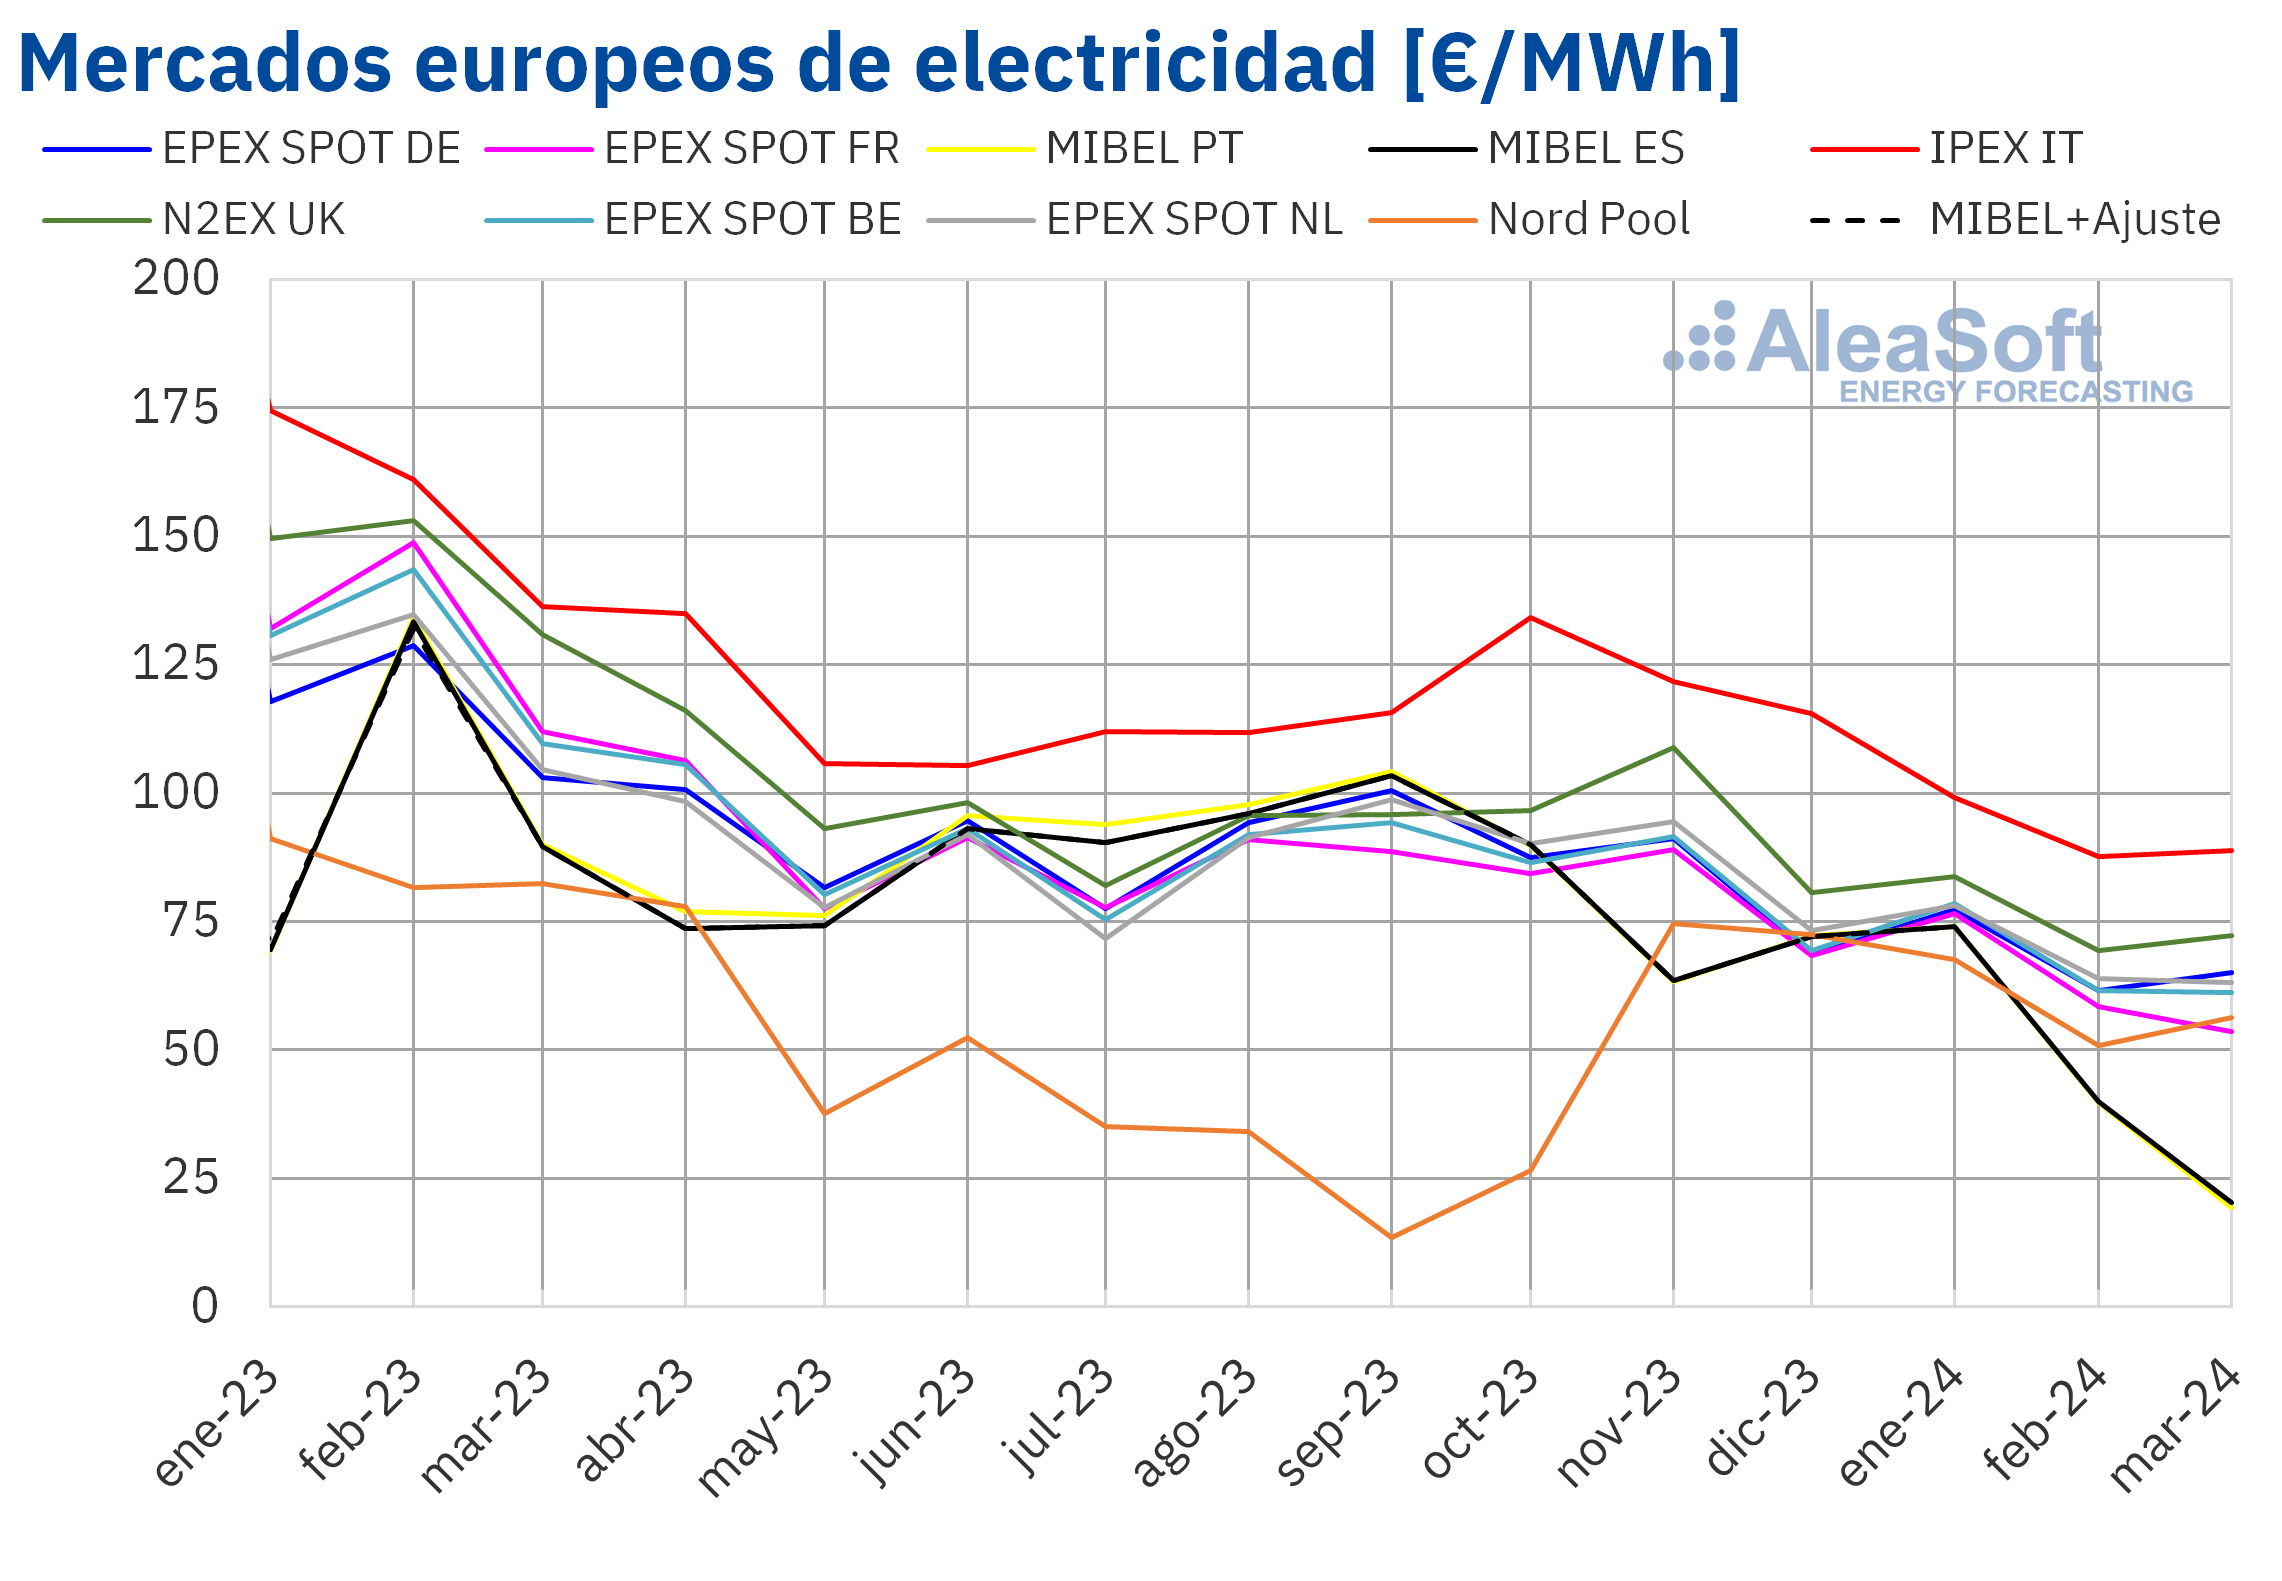 alt - https://static.comunicae.com/photos/notas/1254052/20240403-AleaSoft-Precio-mensual-mercados-electricos-Europa.png